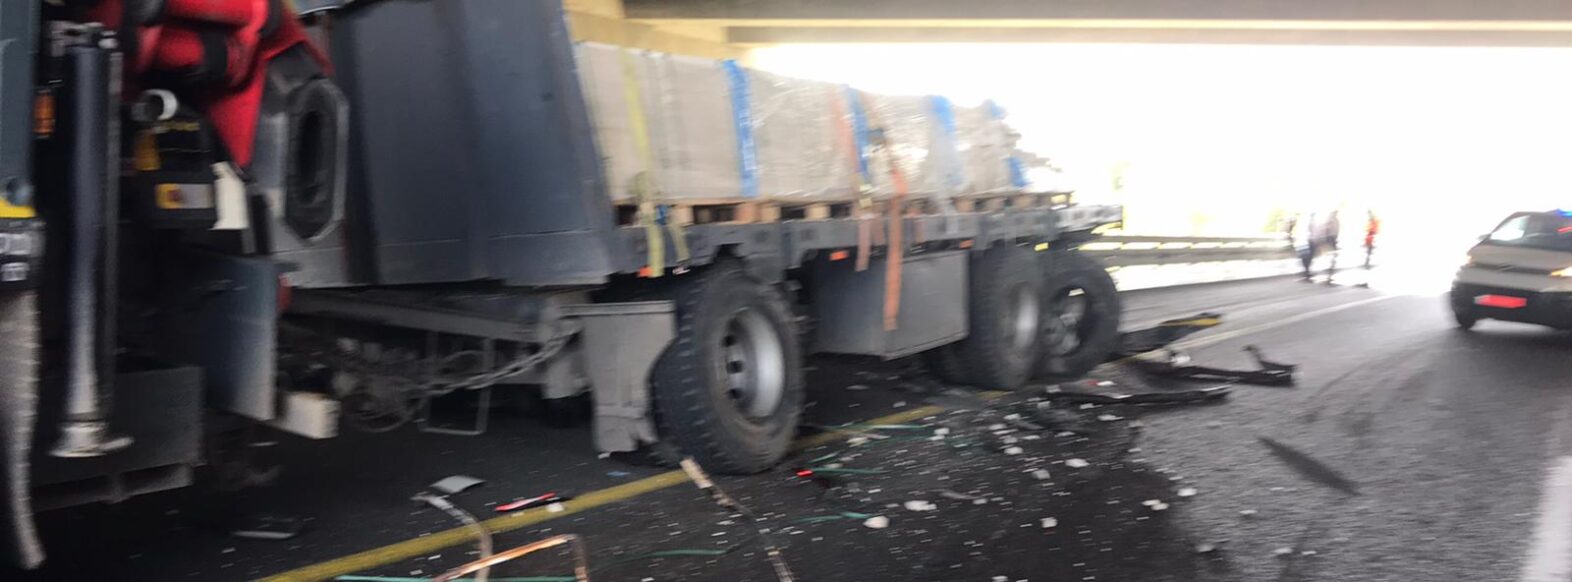 14 אלף ליטר סולר נשפכו בכביש 22 עקב תאונה בין משאיות